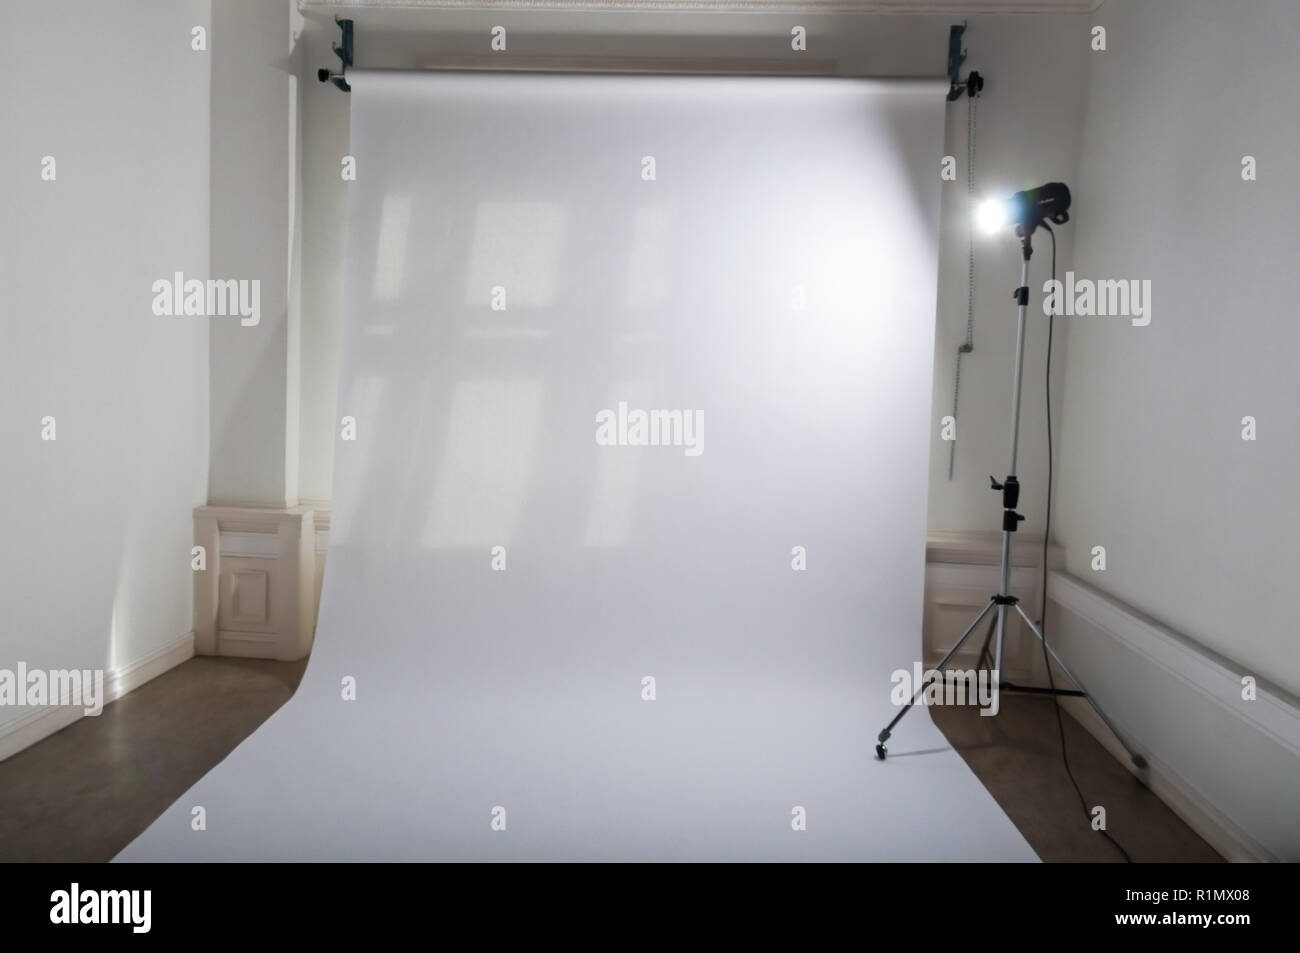 Eine leere Professional Photo Studio mit einfachen und sauberen Fotografische Geräte Setup von weißem Normalpapier Hintergrund und hell erleuchteten flash Spotlight auf der Lampe Stativ in einem gedimmt Atelier Stockfoto